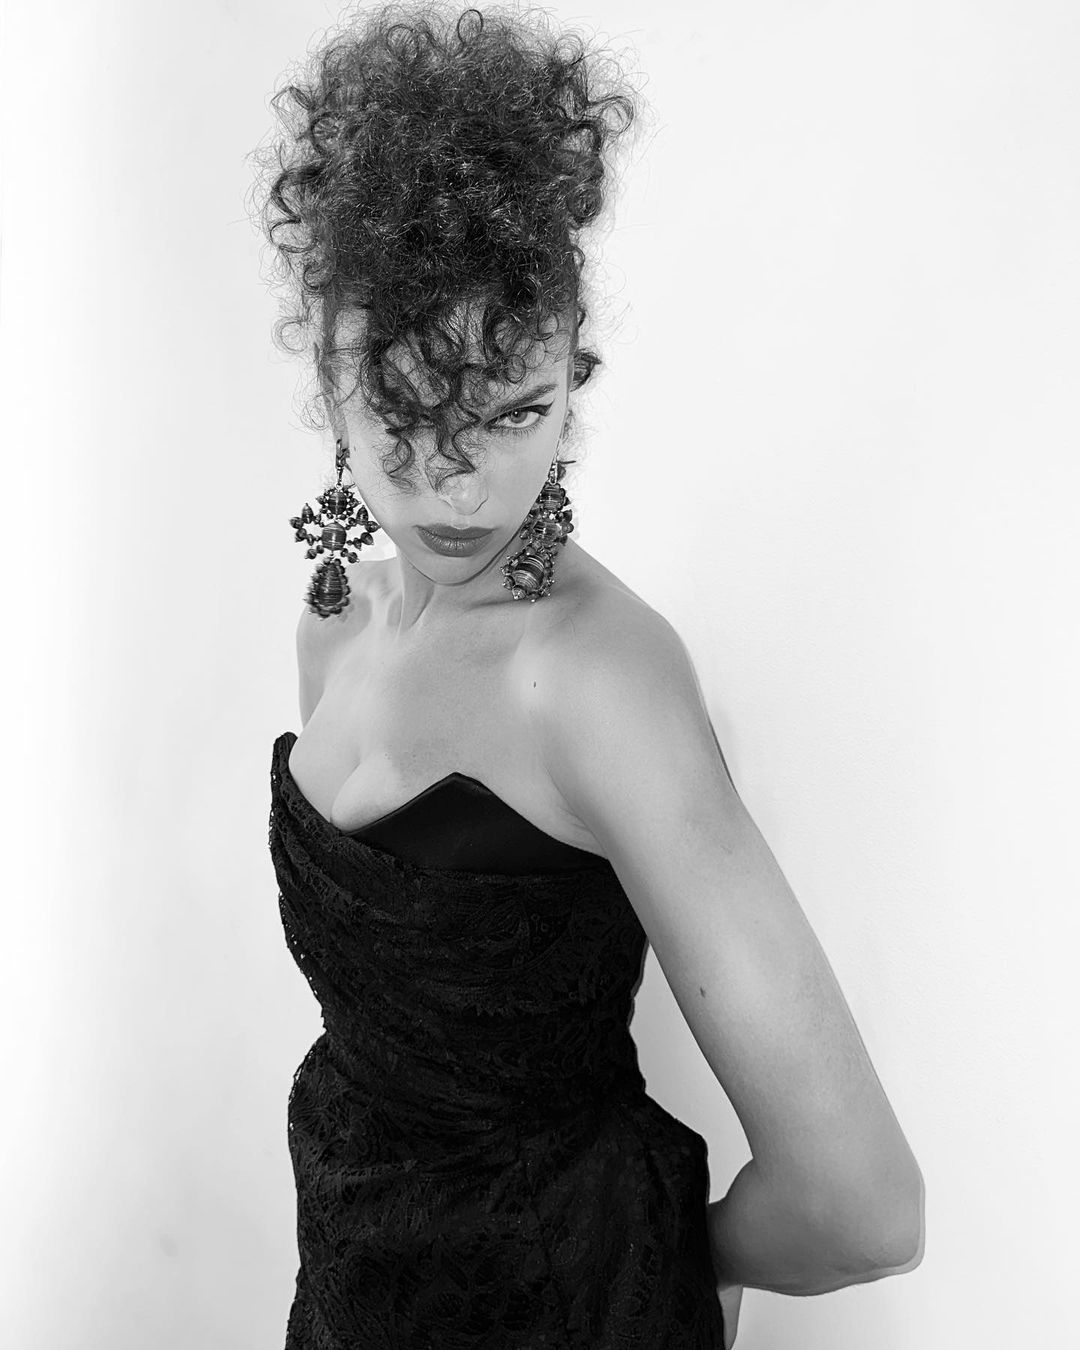 Fotos n°3 : Irina Shayk Rocks Curls para Westwood!